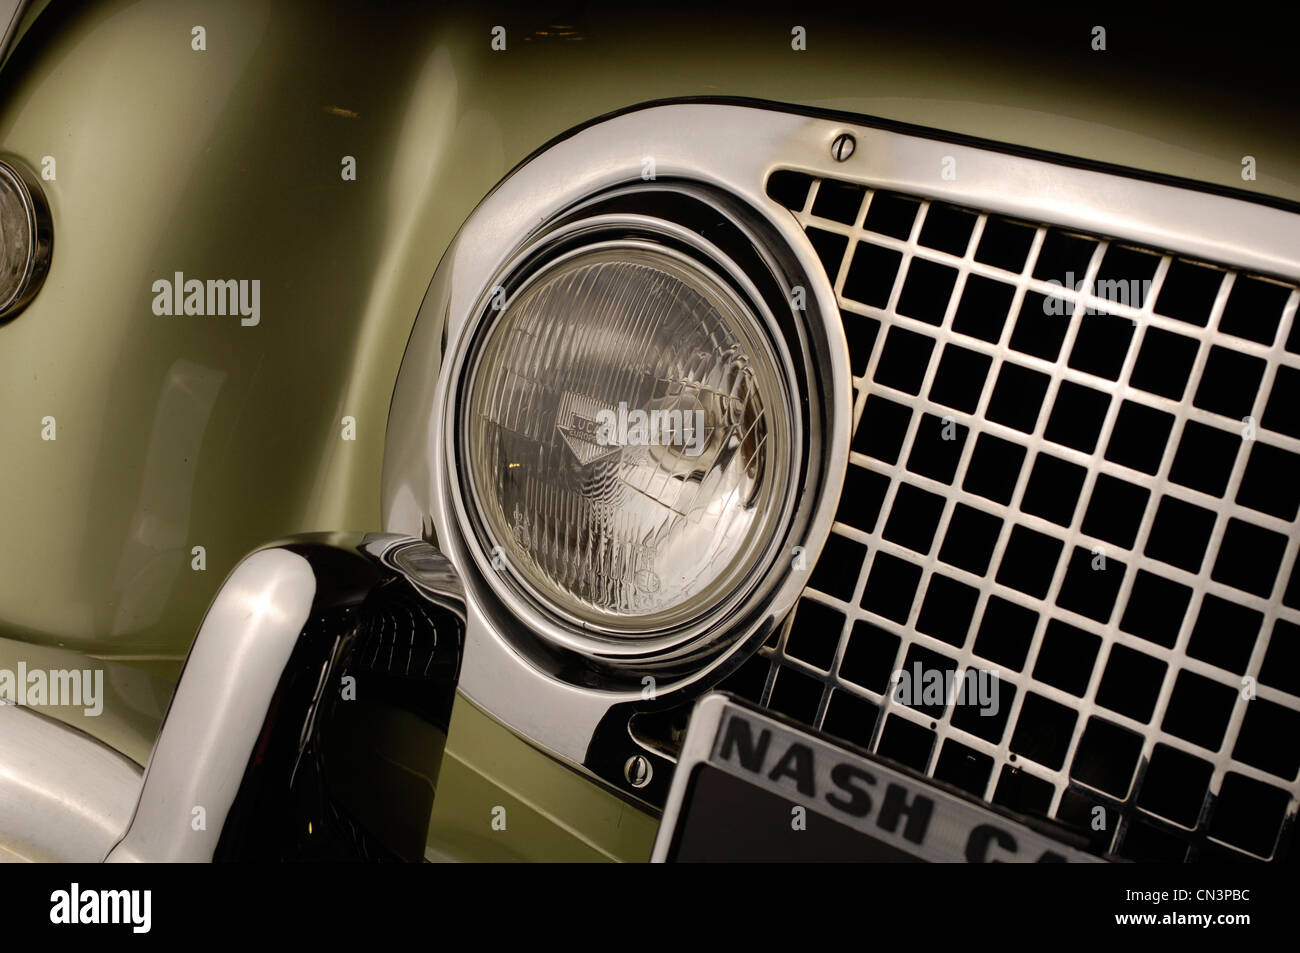 1953-Nash-Healey-Cabrio Stockfoto